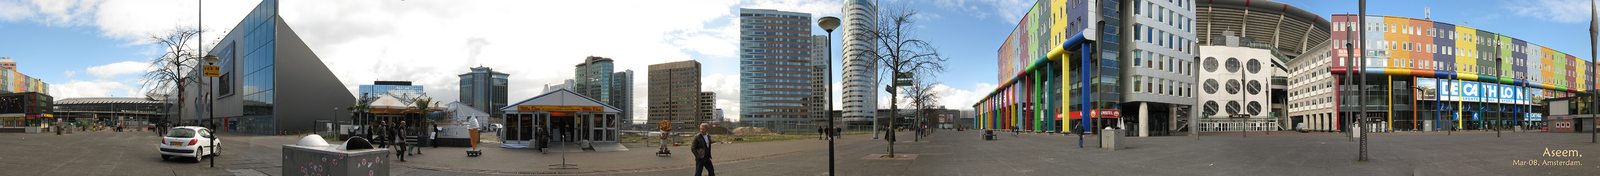 Панорамный вид окрестности «Амстердам-арены» 18 марта 2008 года